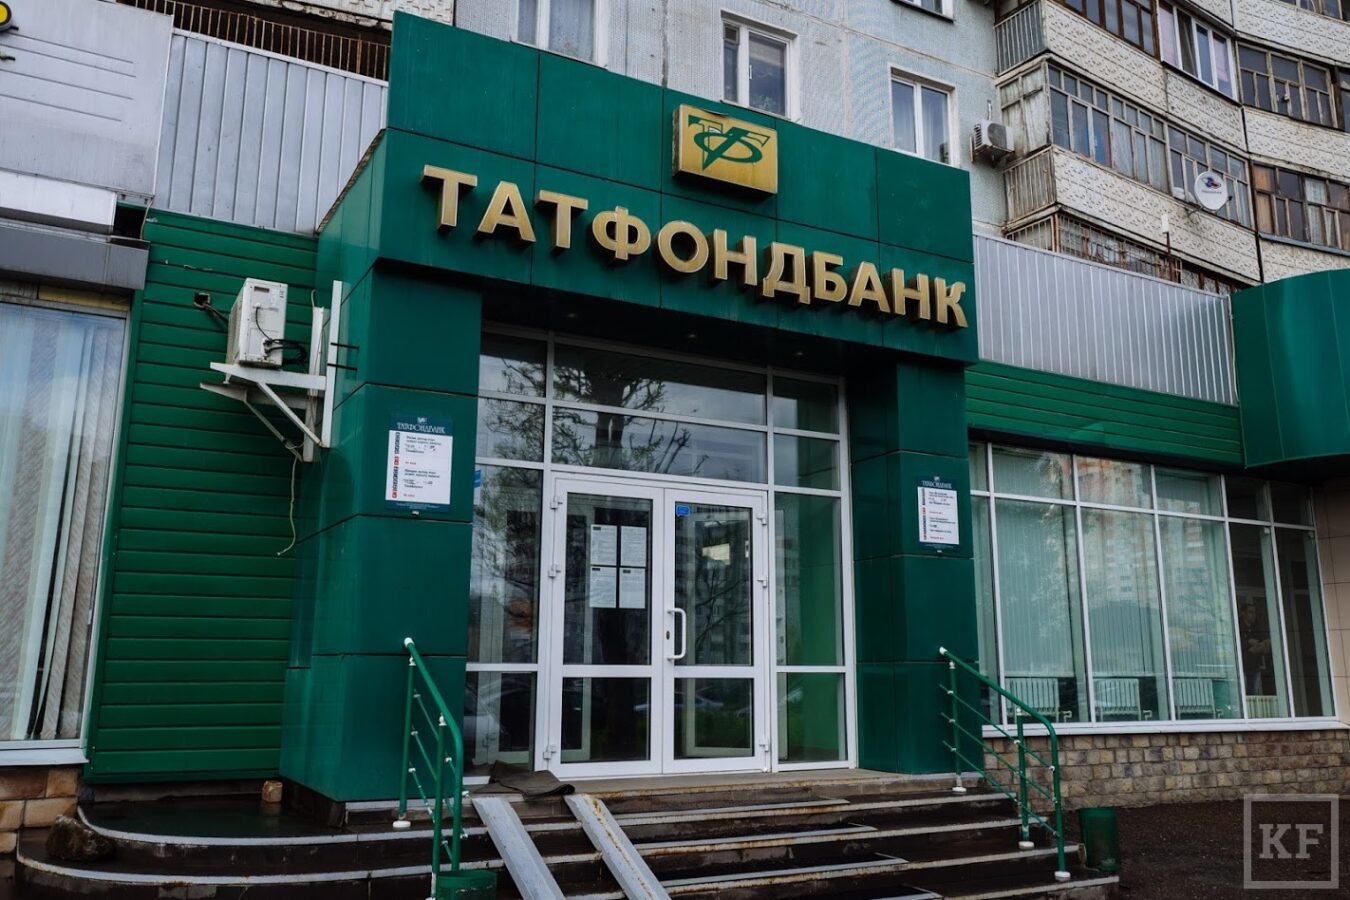 9 млрд рублей обнаружил конкурсный управляющий Татфондбанка Агентство по страхованию вкладов (АСВ)